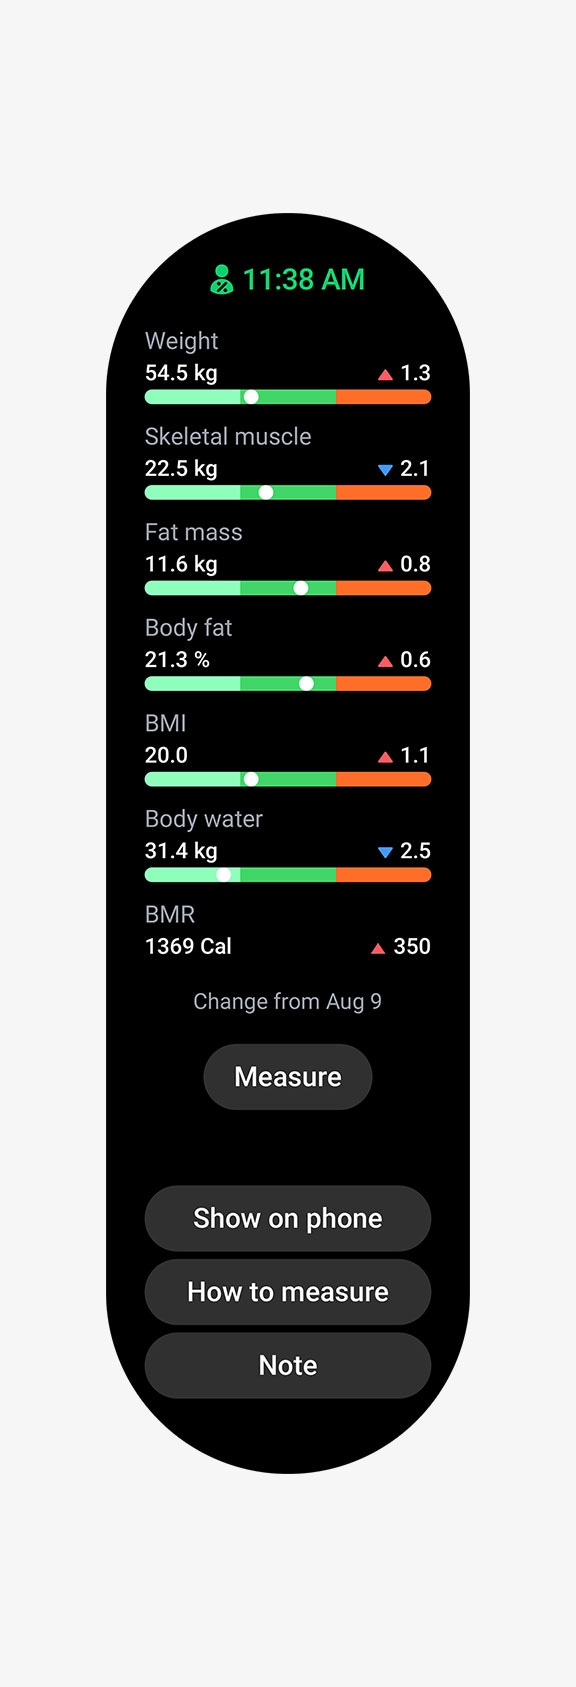 ผลลัพธ์การวัดของตัววัดต่าง ๆ ตั้งแต่น้ำหนัก, ดัชนีมวลกาย (BMI), มวลกล้ามเนื้อ, มวลไขมัน, ปริมาณน้ำในร่างกาย ไปจนถึง อัตราเผาผลาญพลังงาน (BMR)